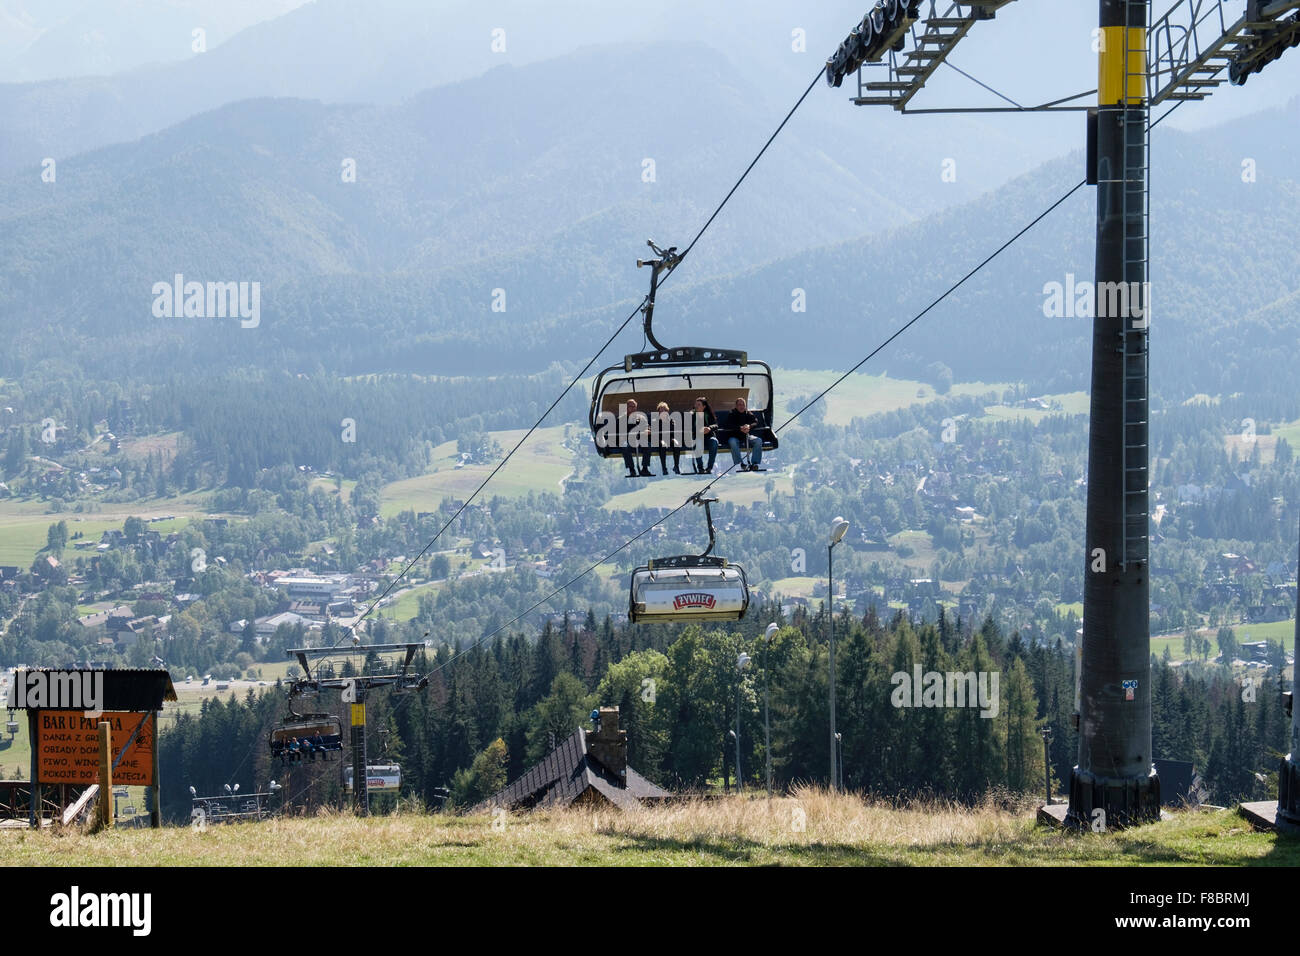 People riding on Butorowy Wierch Chairlift up to Gubałowka Mountain, Zakopane, Tatra County, Poland Stock Photo